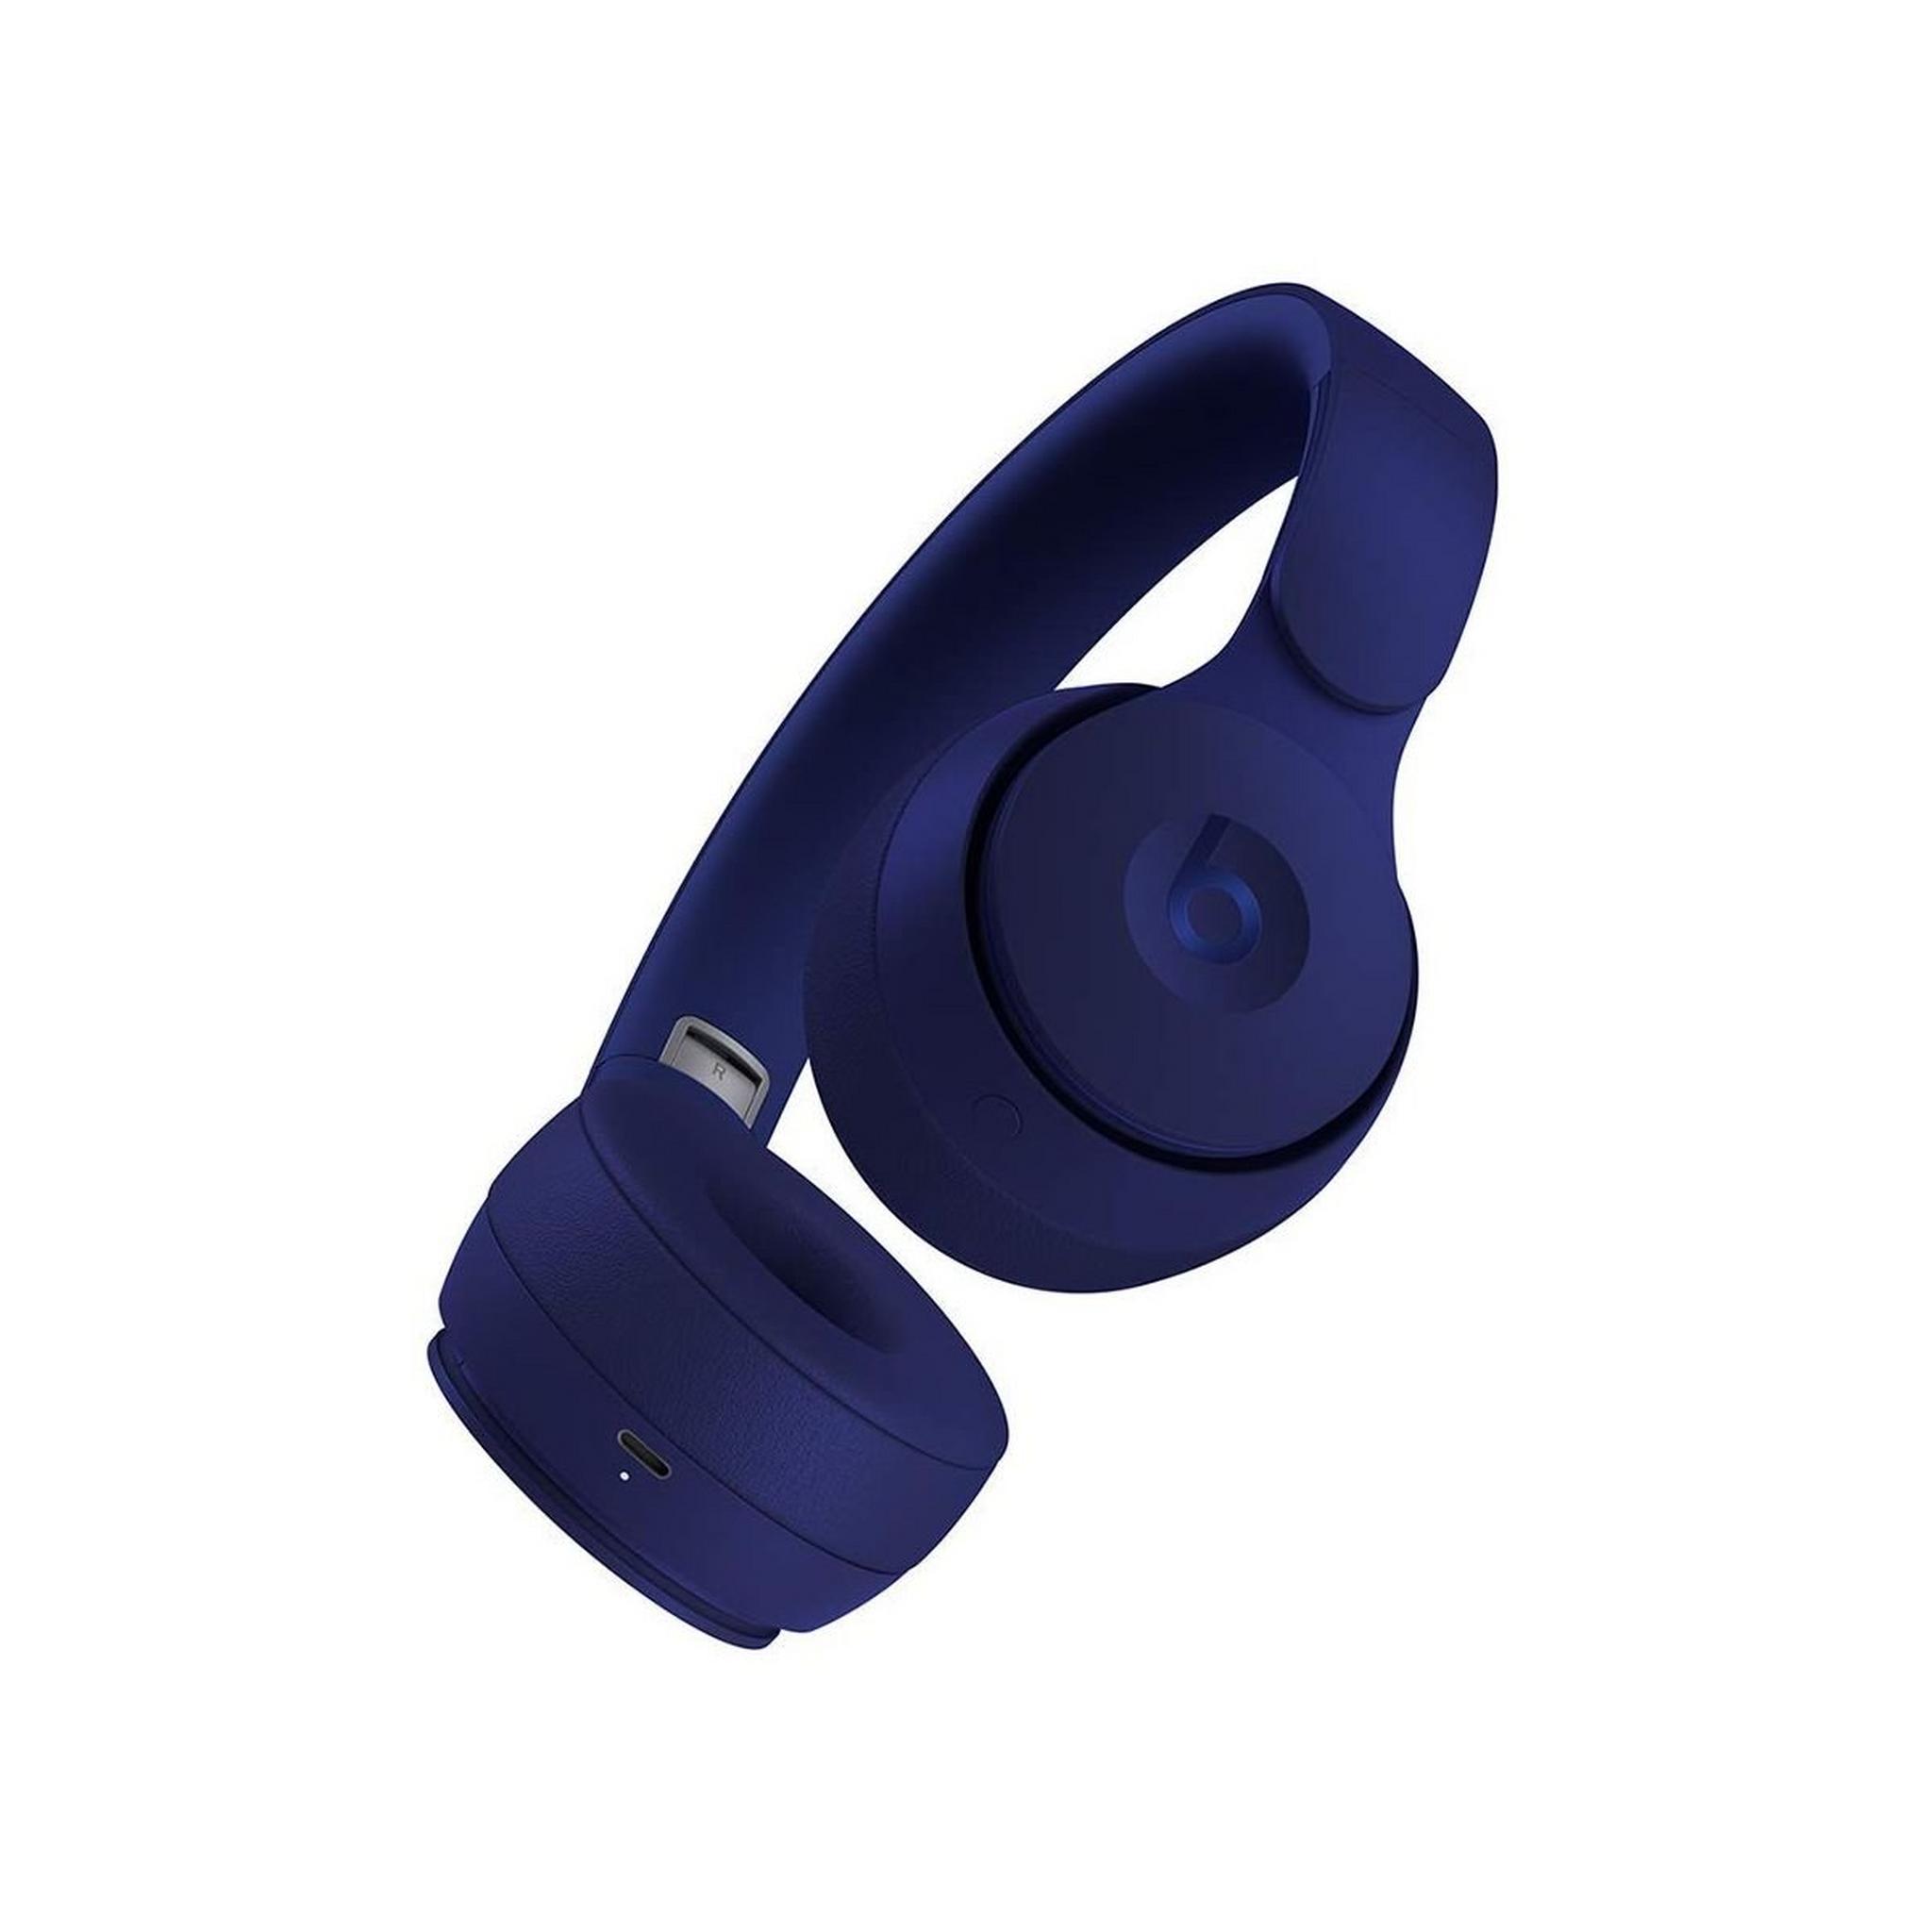 Beats by Dr. Dre Solo Pro Wireless Over-ear Headphone - Dark Blue